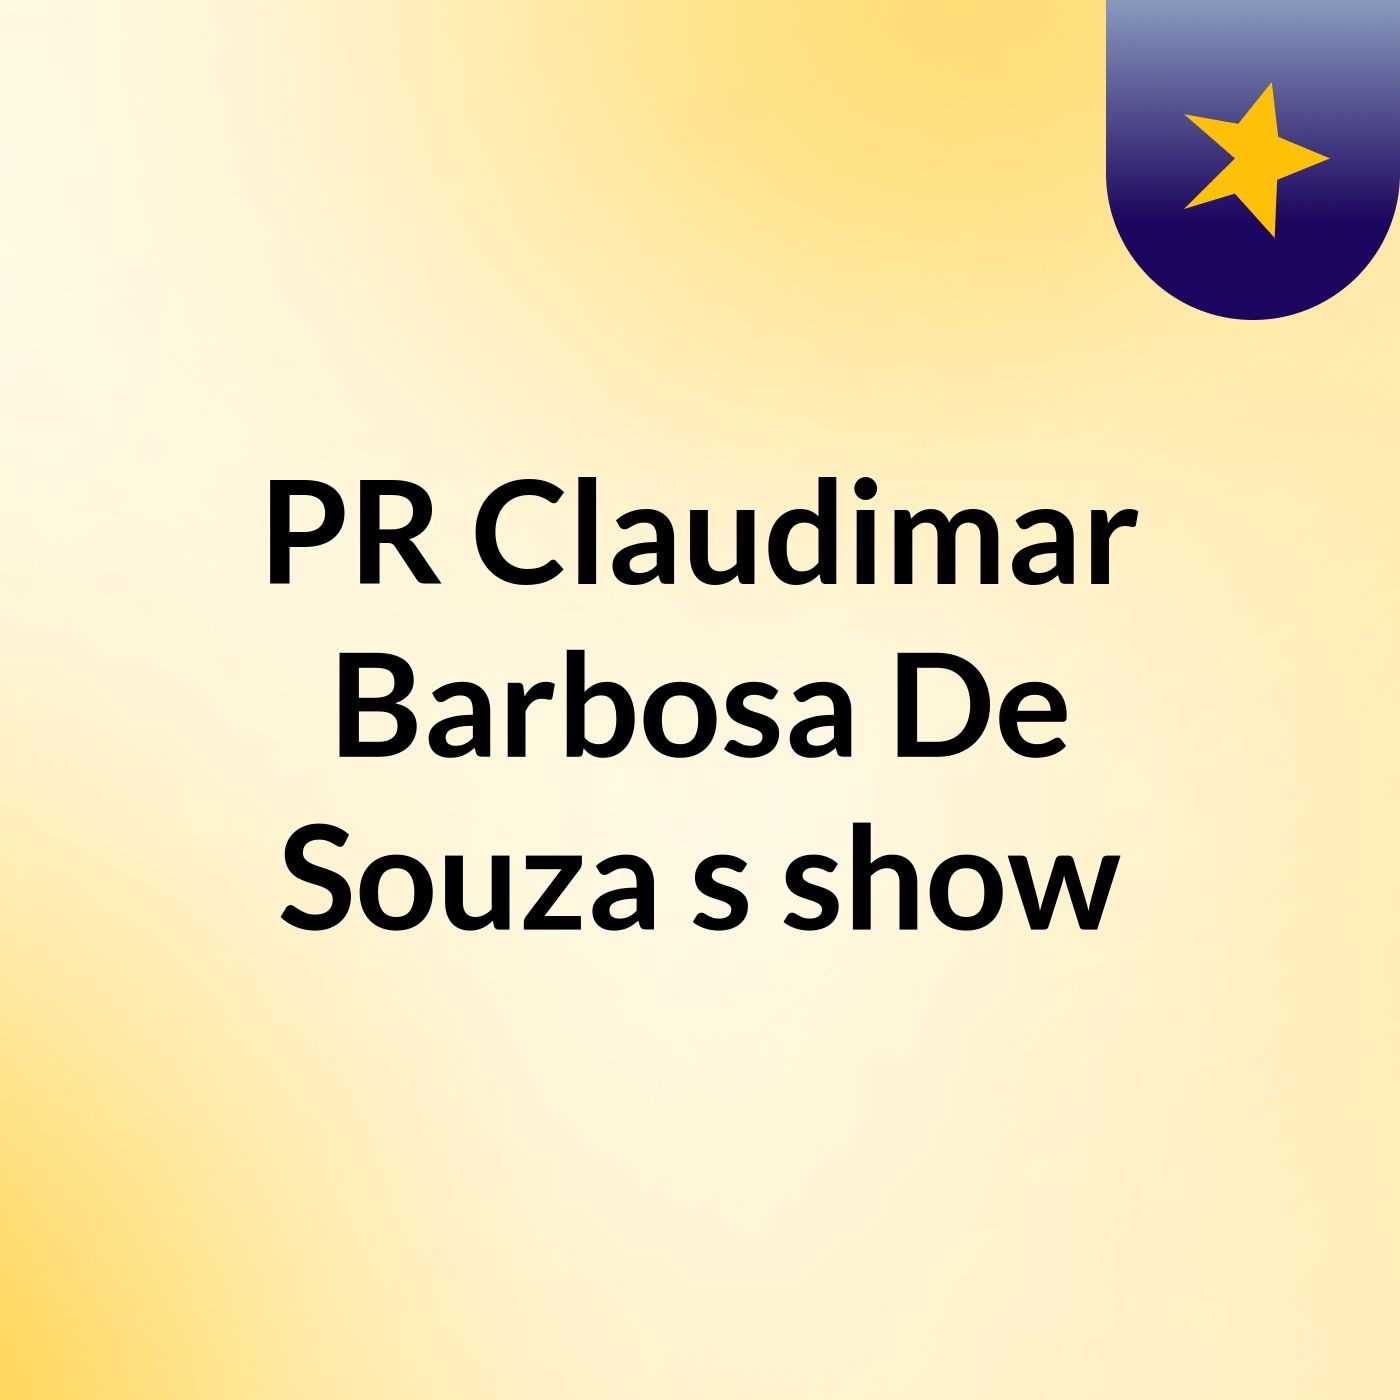 PR Claudimar Barbosa De Souza's show